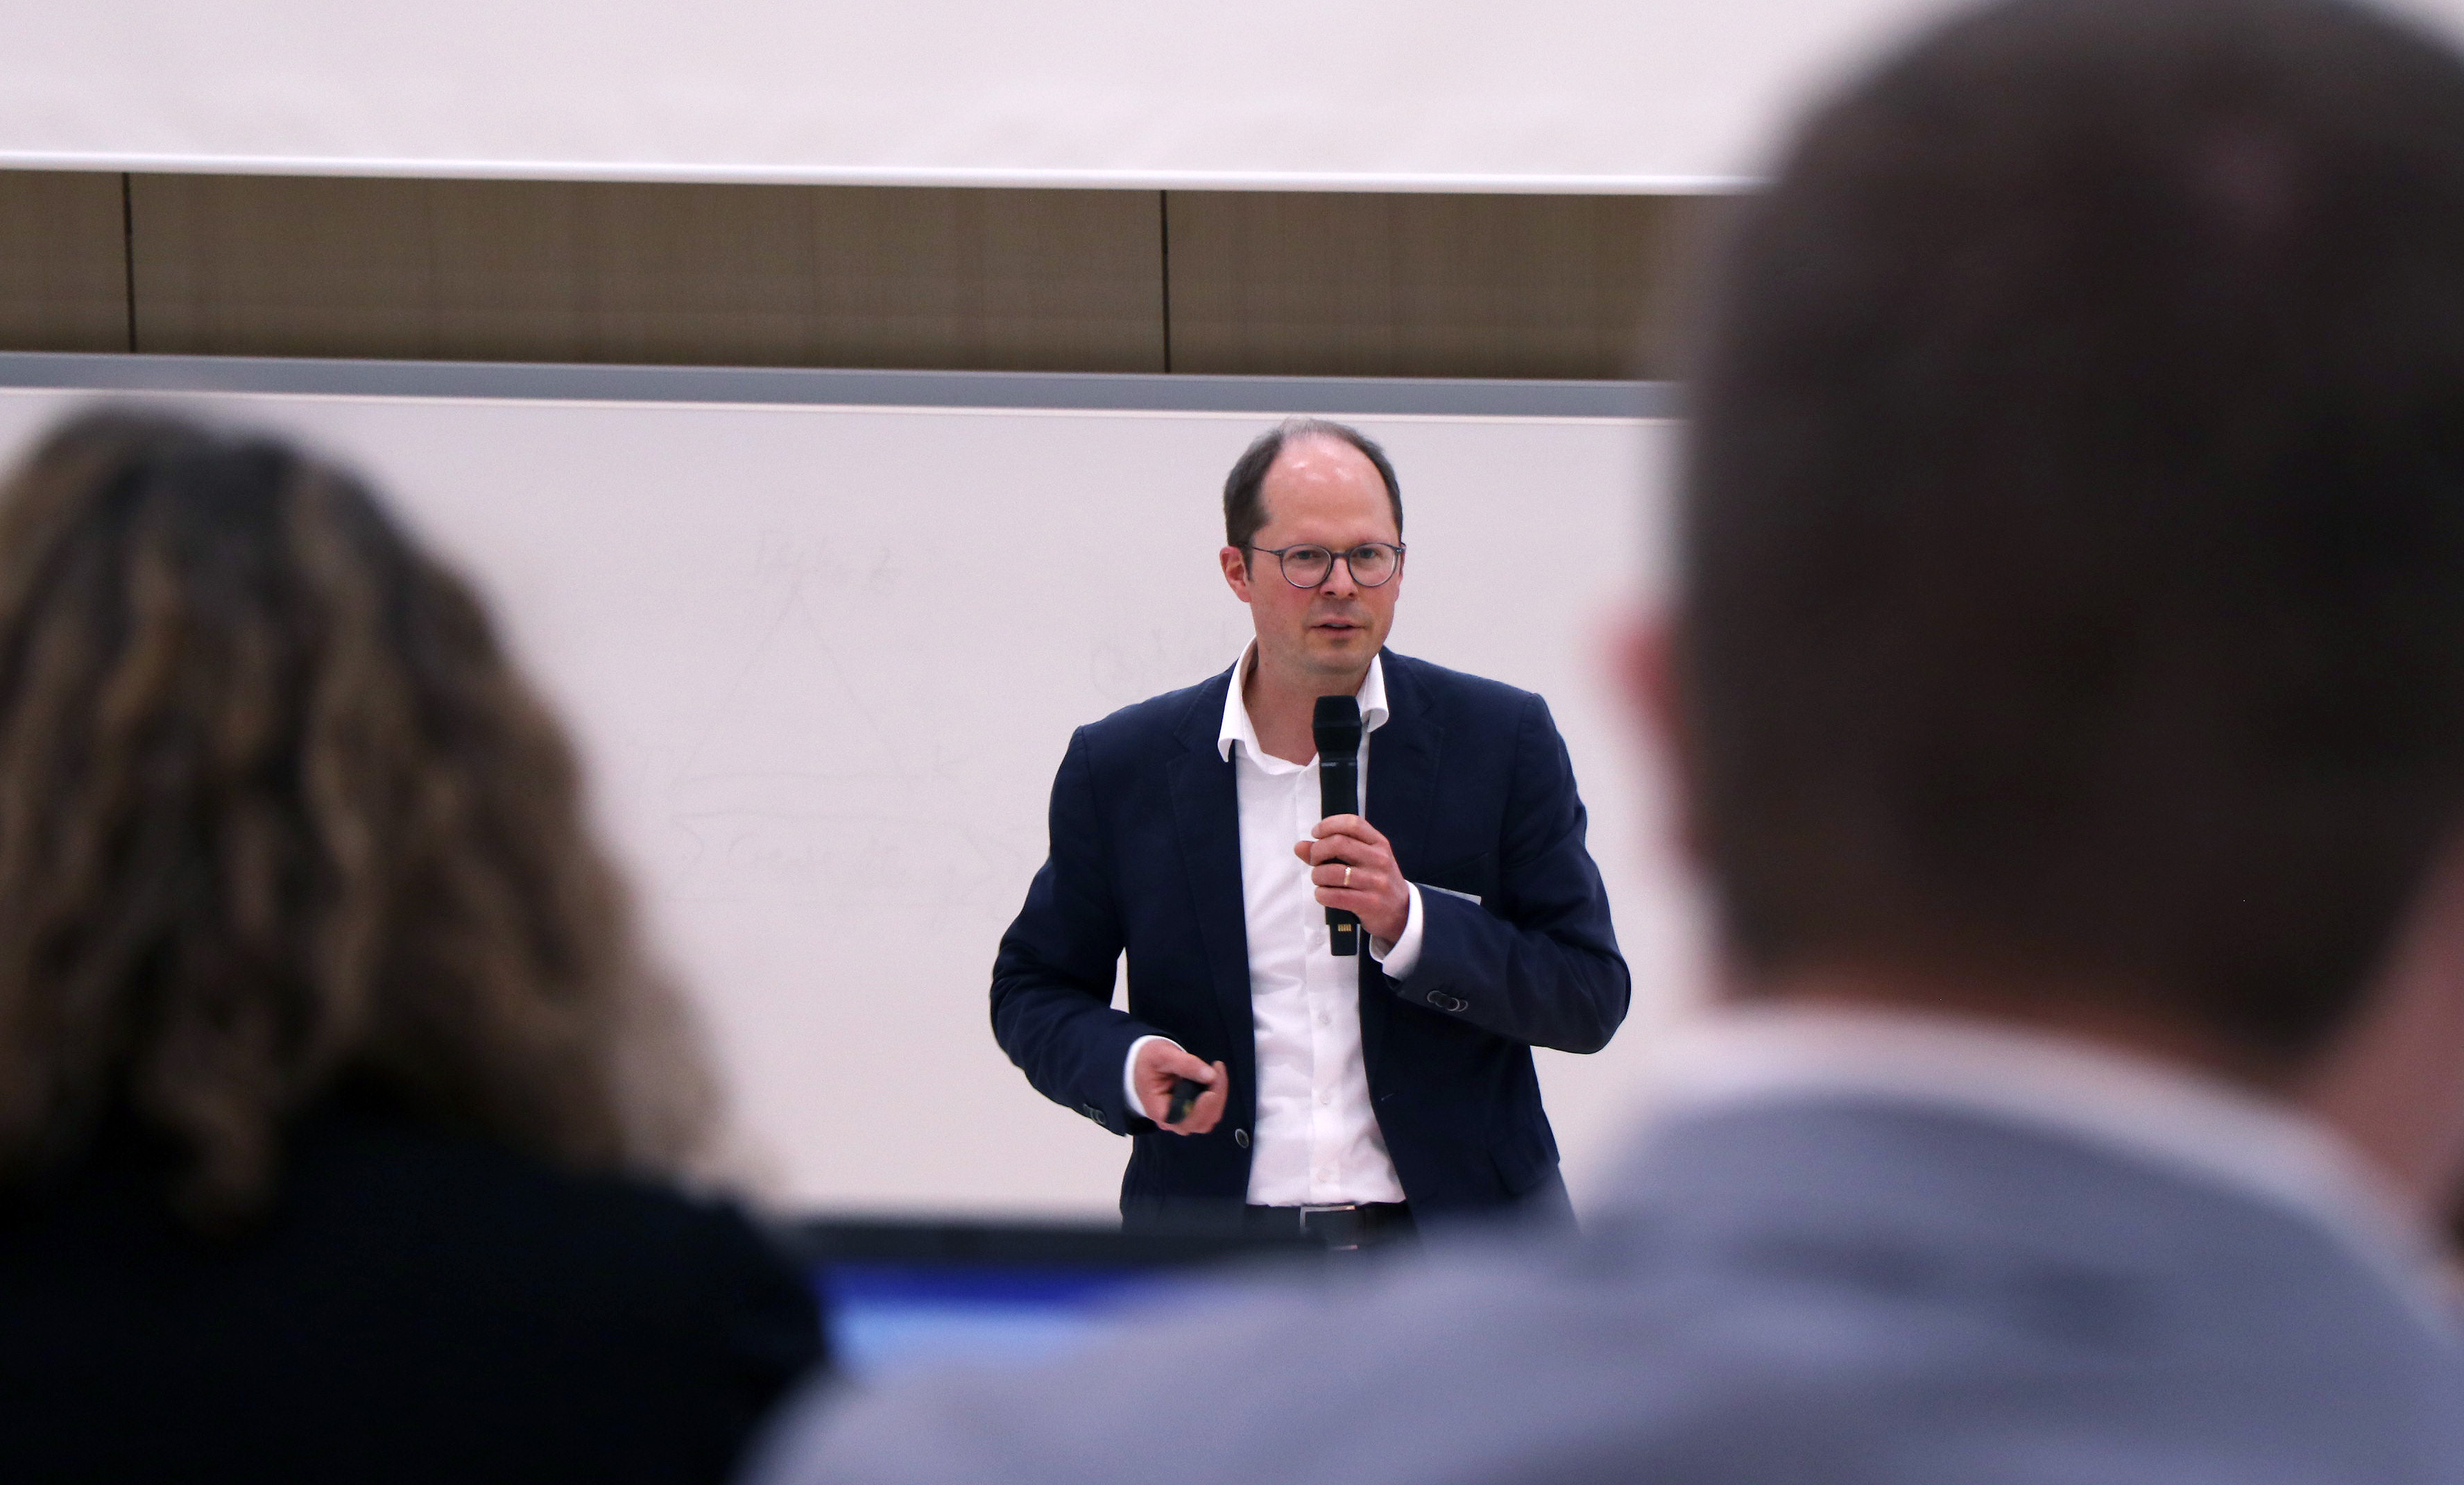 Prof. Dr. Ulrich Trautwein empfängt die Studierenden der Weiterbildungsmasters Schulmanagement & Leadership im Seminar